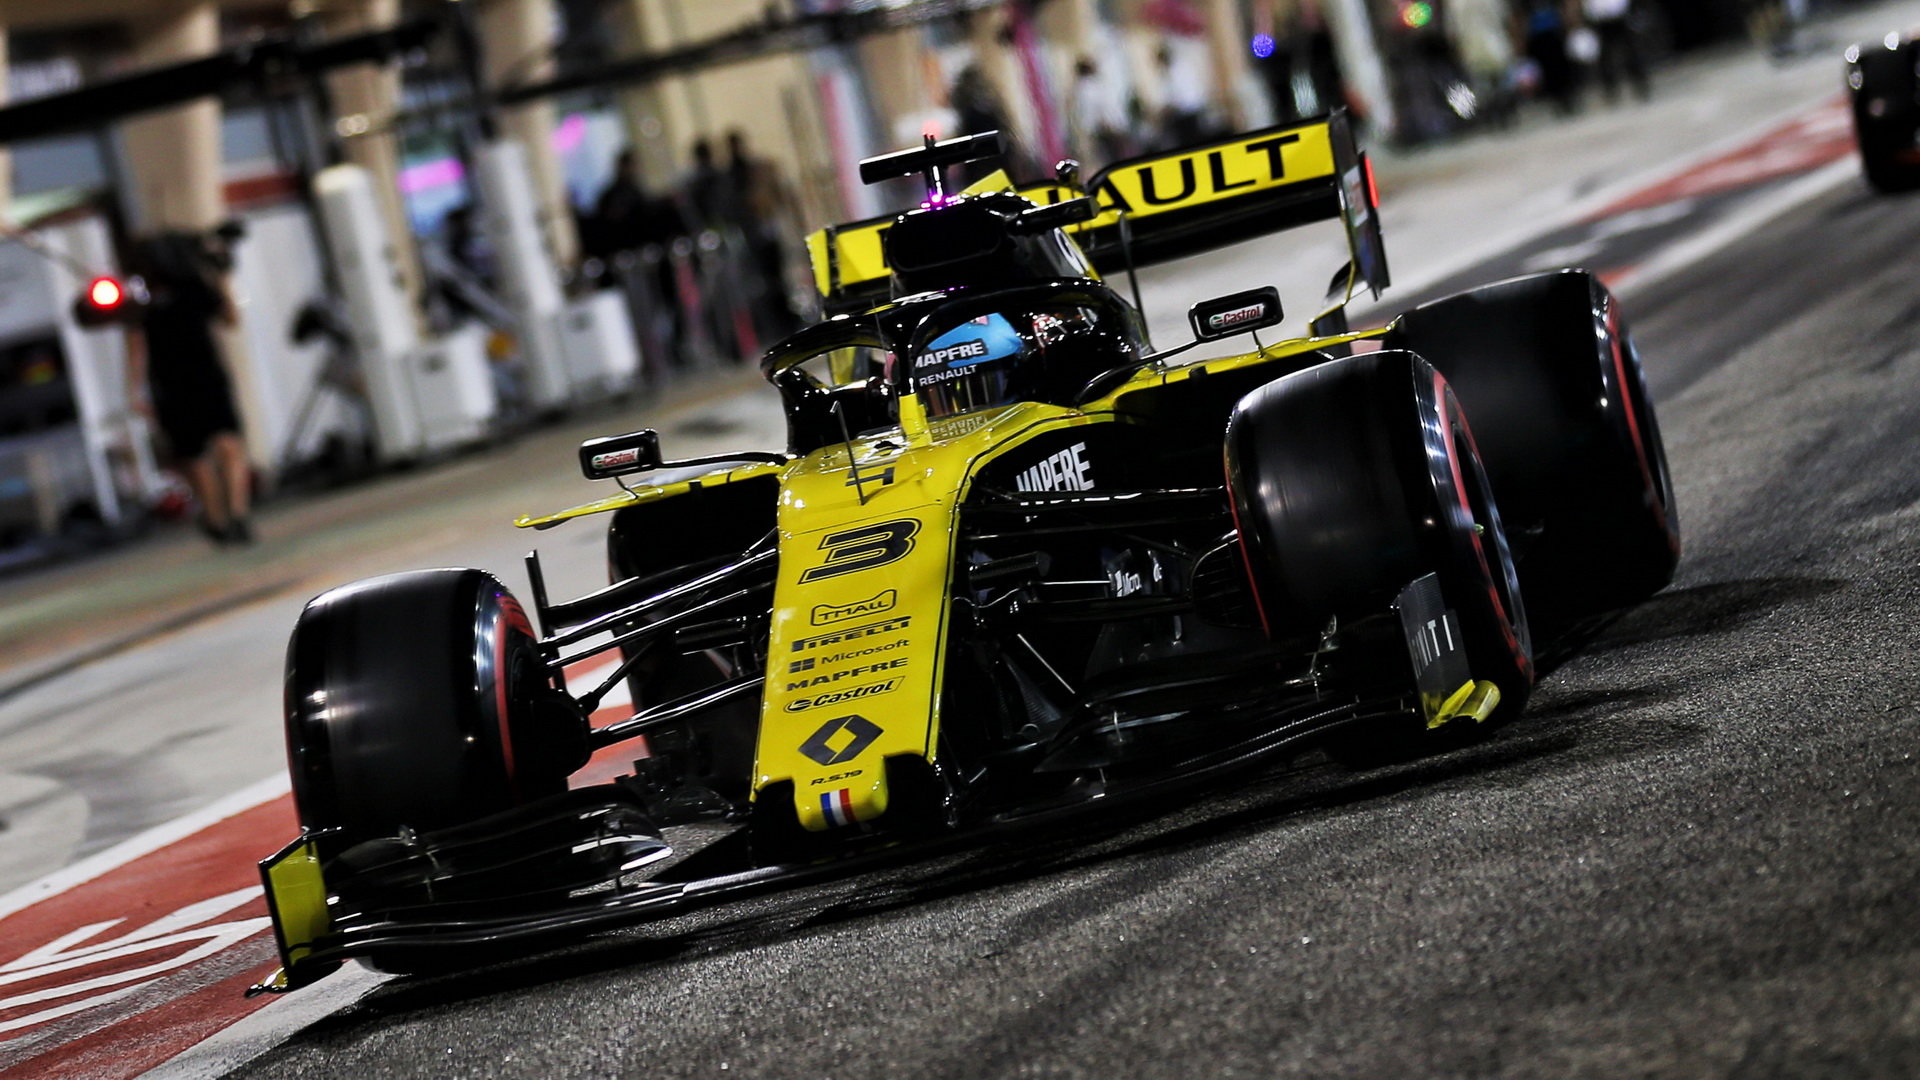 Daniel Ricciardo v Bahrajnu musel odstoupit kvůli závadě MGU-K